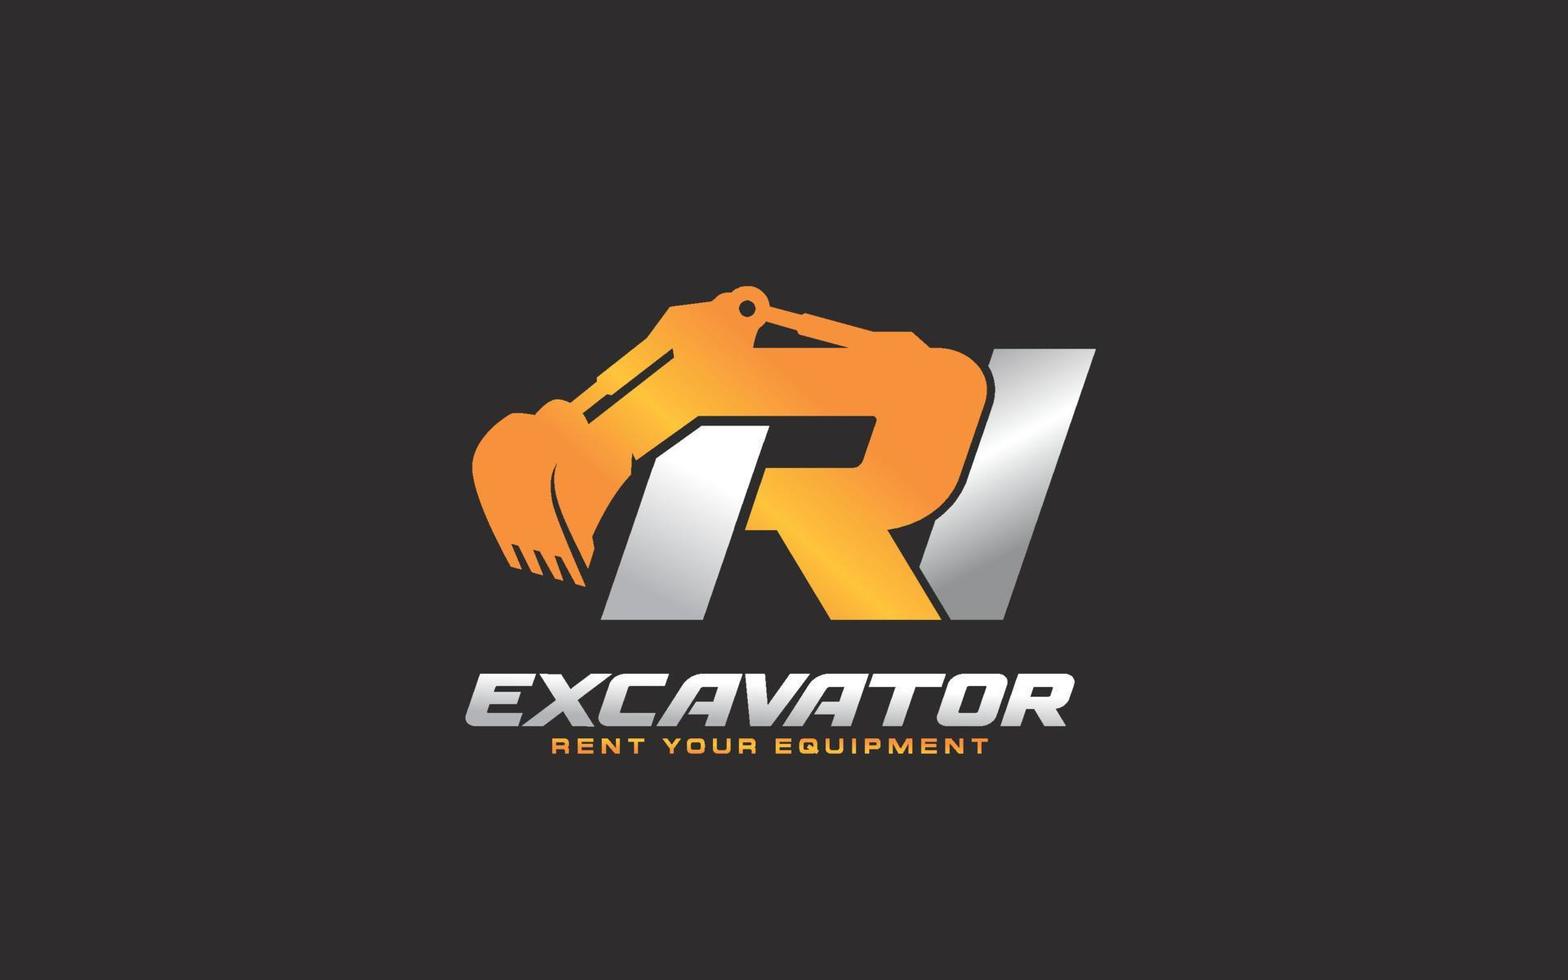 ri logo graafmachine voor bouw bedrijf. zwaar uitrusting sjabloon vector illustratie voor uw merk.